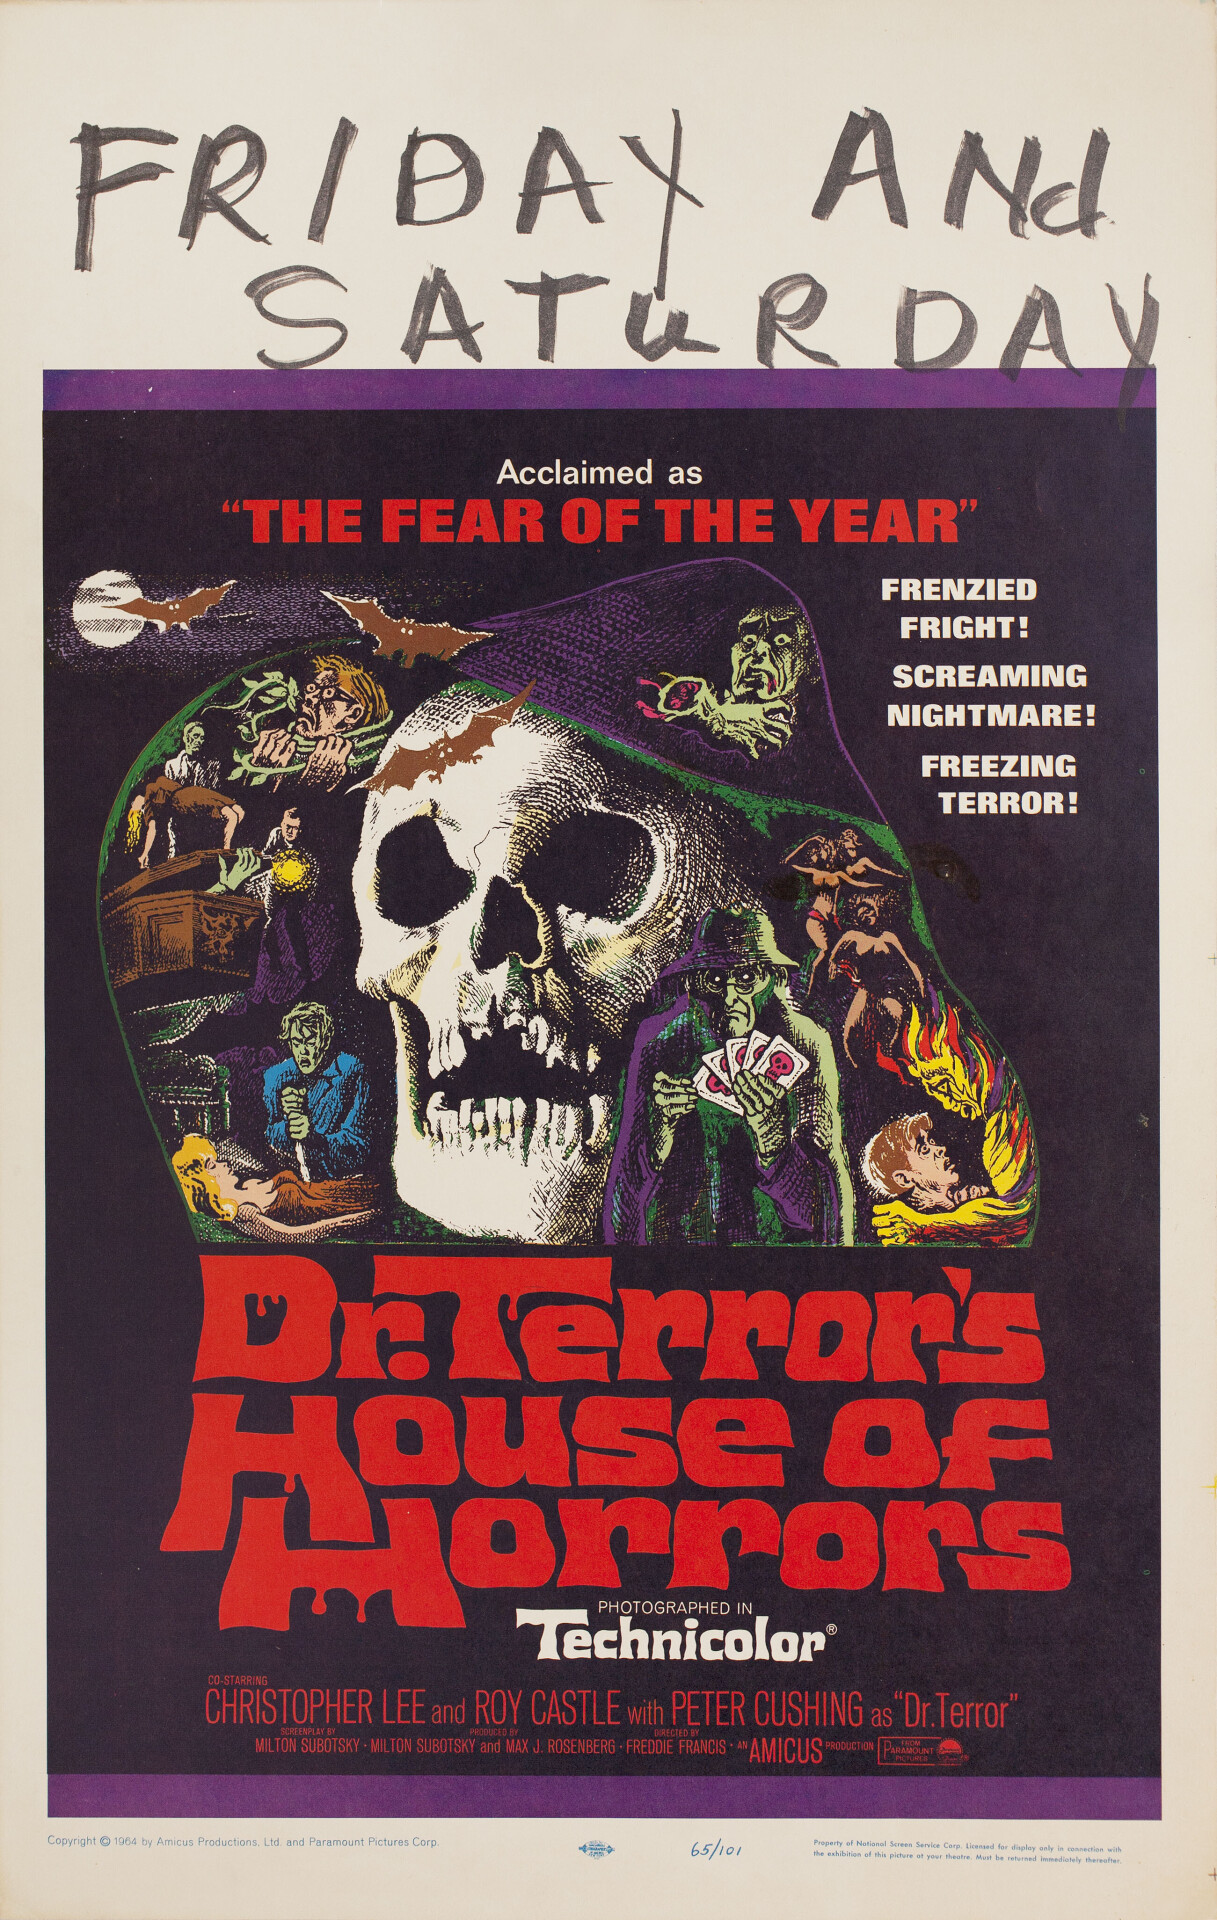 Дом ужасов доктора Террора (Dr. Terrors House of Horrors, 1965), режиссёр Фредди Фрэнсис, американский постер к фильму (ужасы, 1965 год)